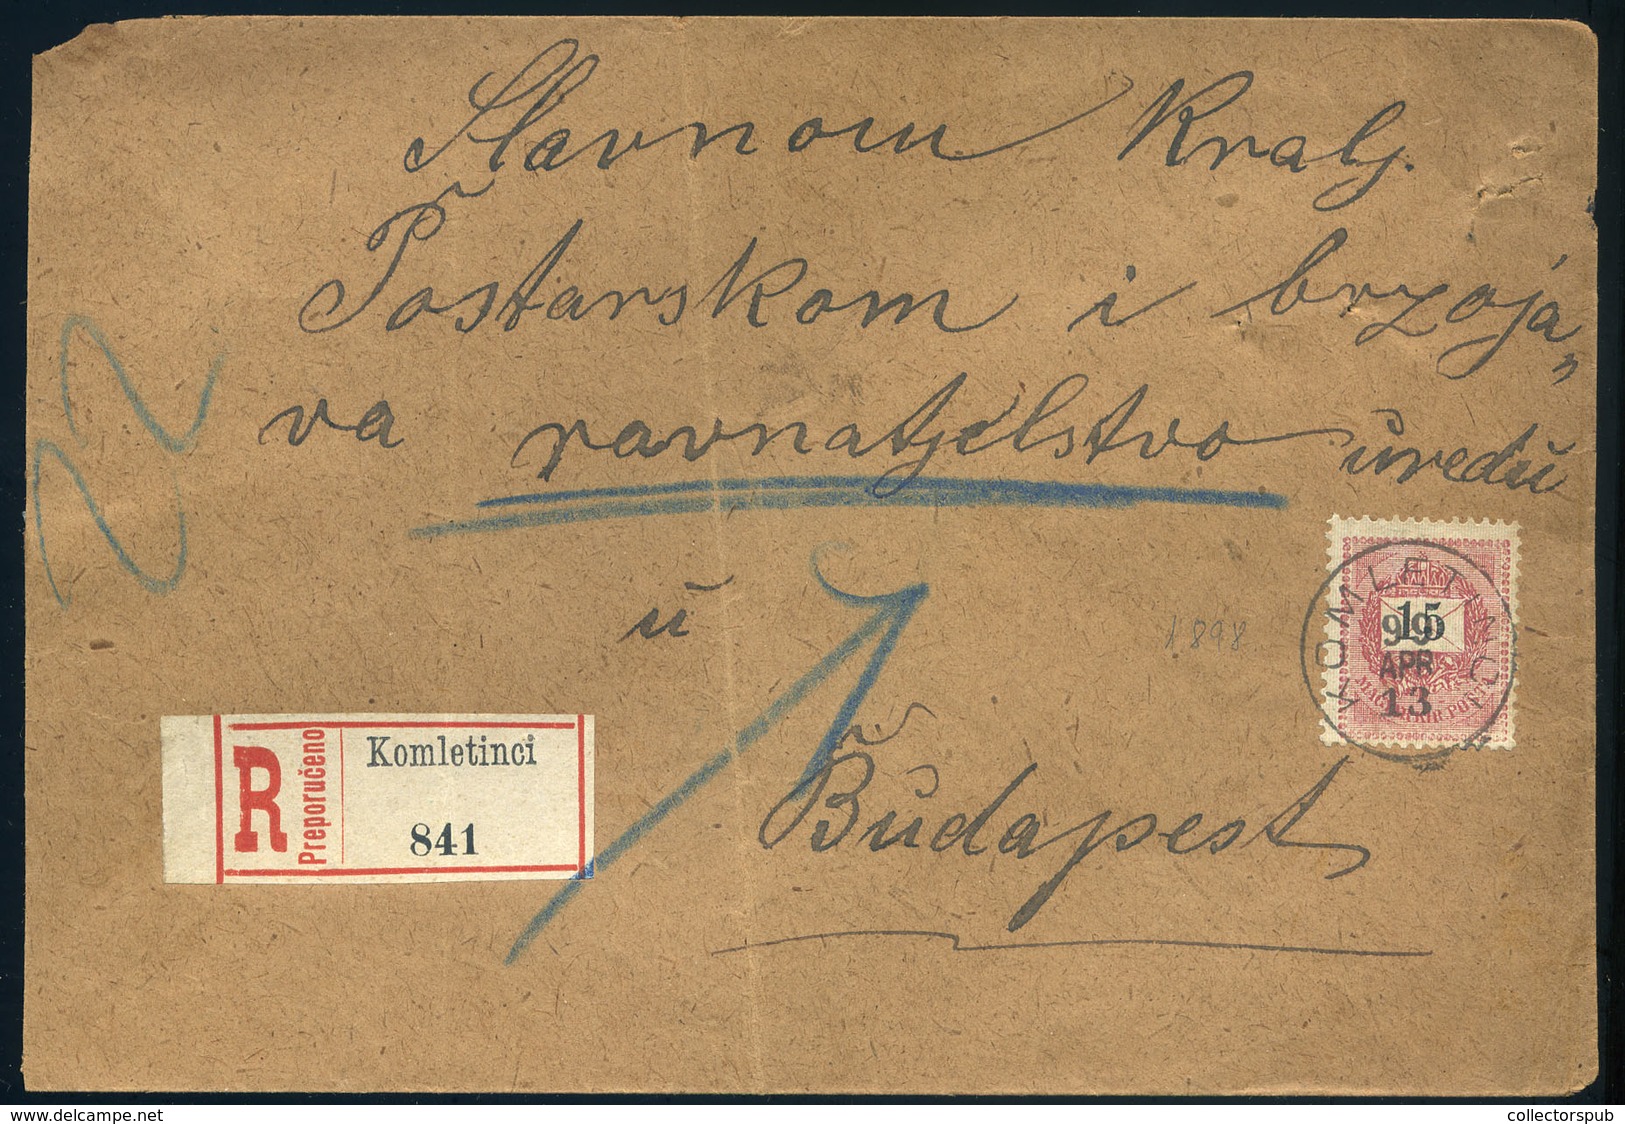 KOMLETINCI 1899. Ajánlott Levél Budapestre Küldve - Gebruikt